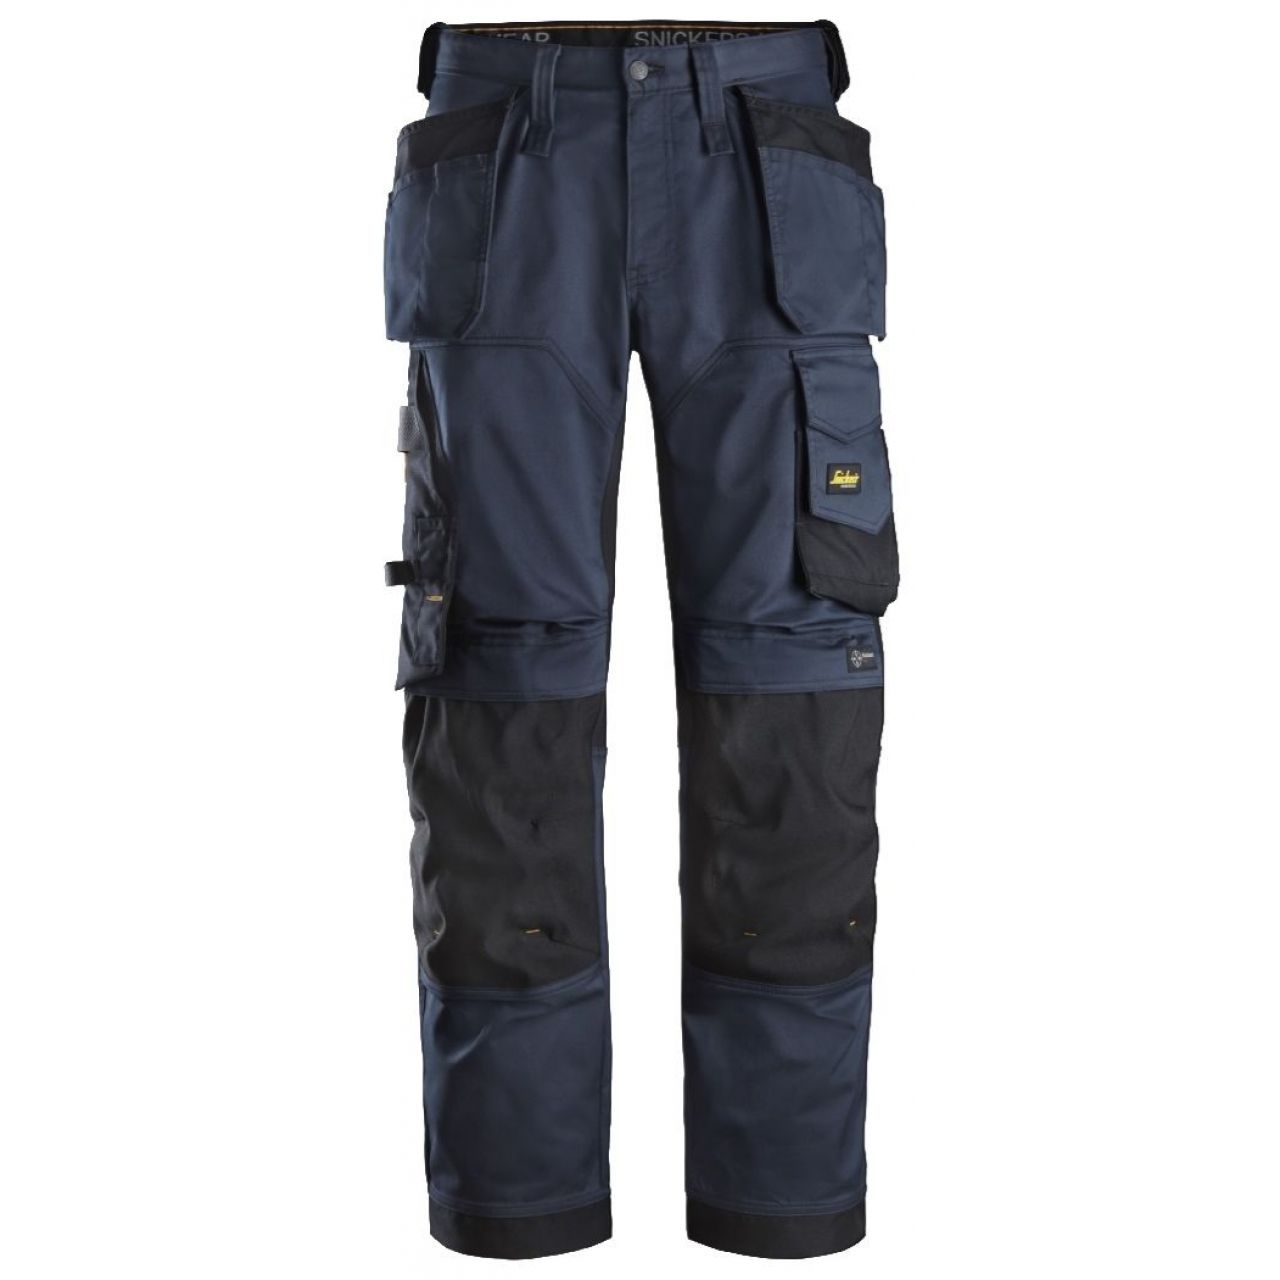 Pantalon elastico ajuste holgado AllroundWork bolsillos flotantes azul marino-negro talla 150